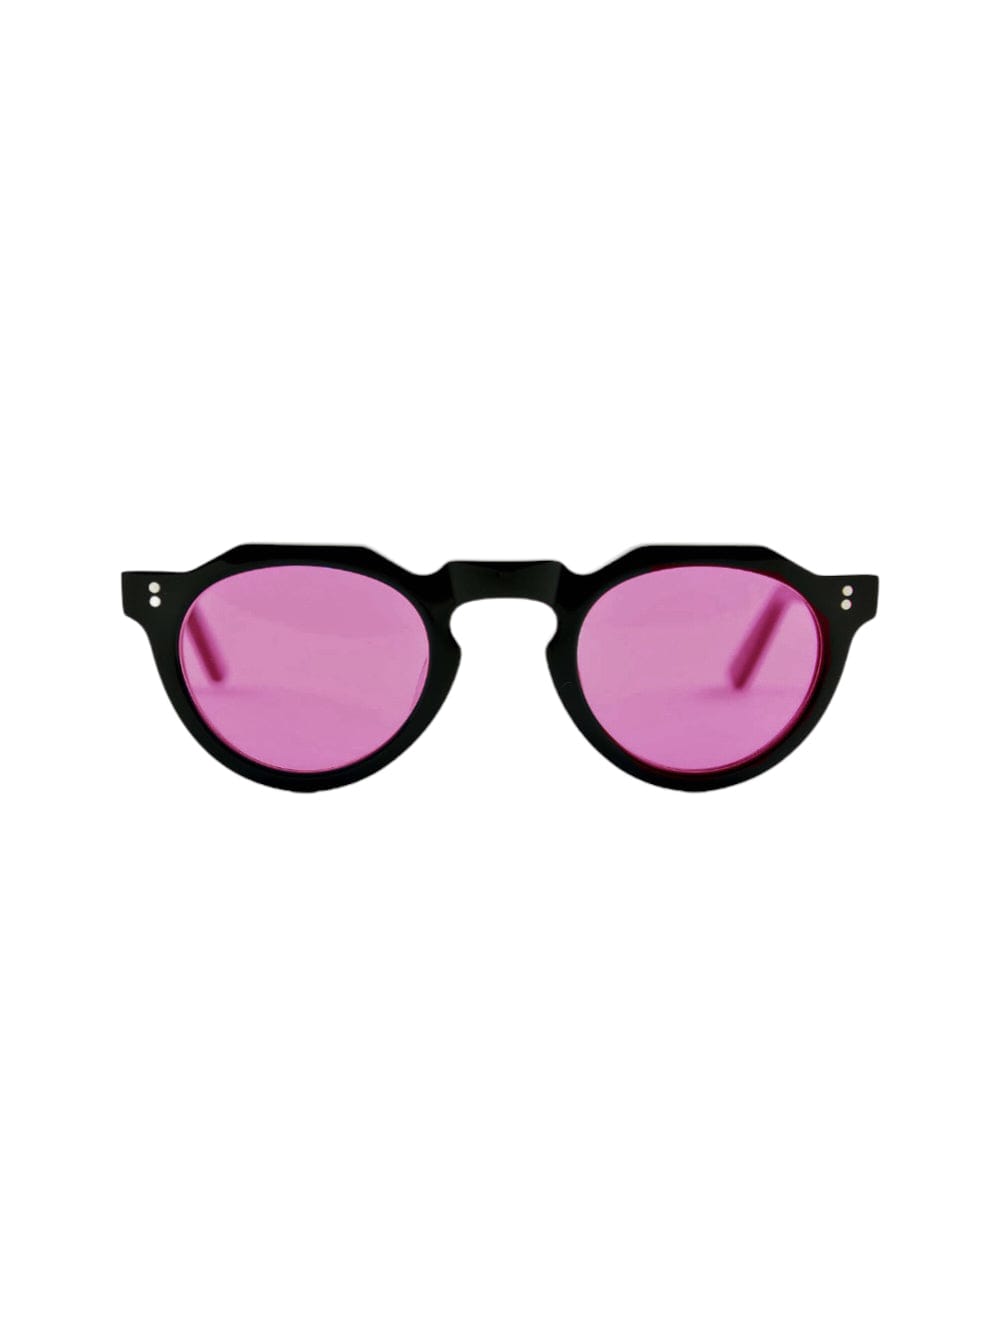 Lesca Pica - Black Sunglasses